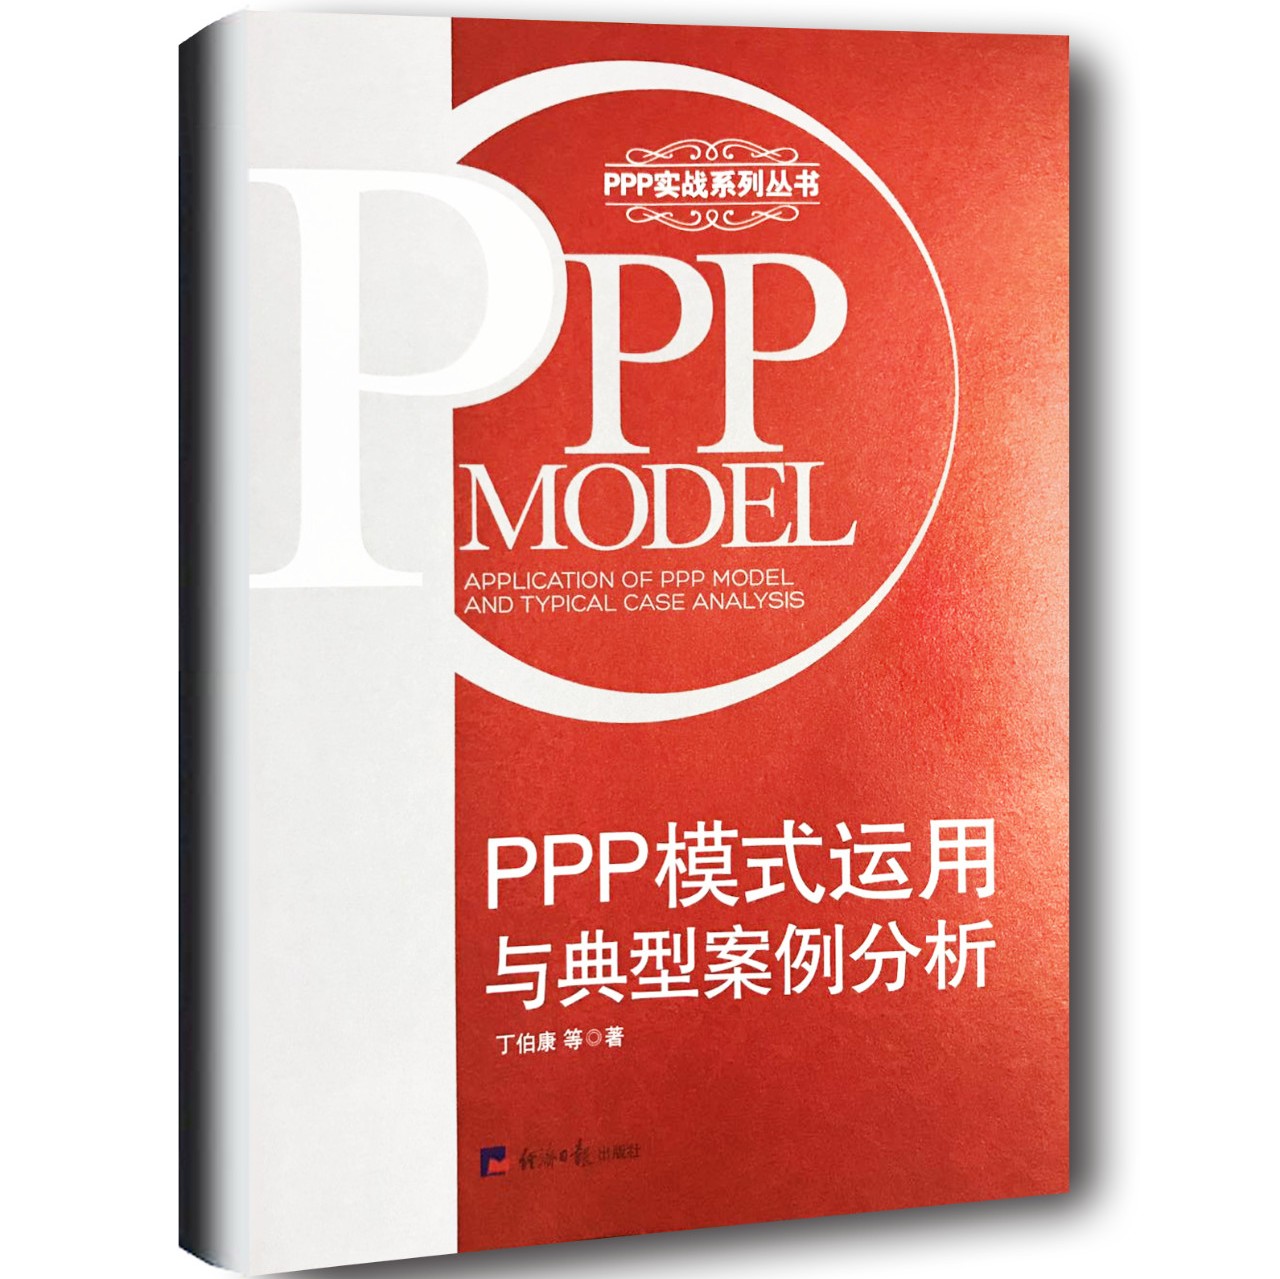 好书推荐|《PPP模式运用与典型案例分析》值得拥有